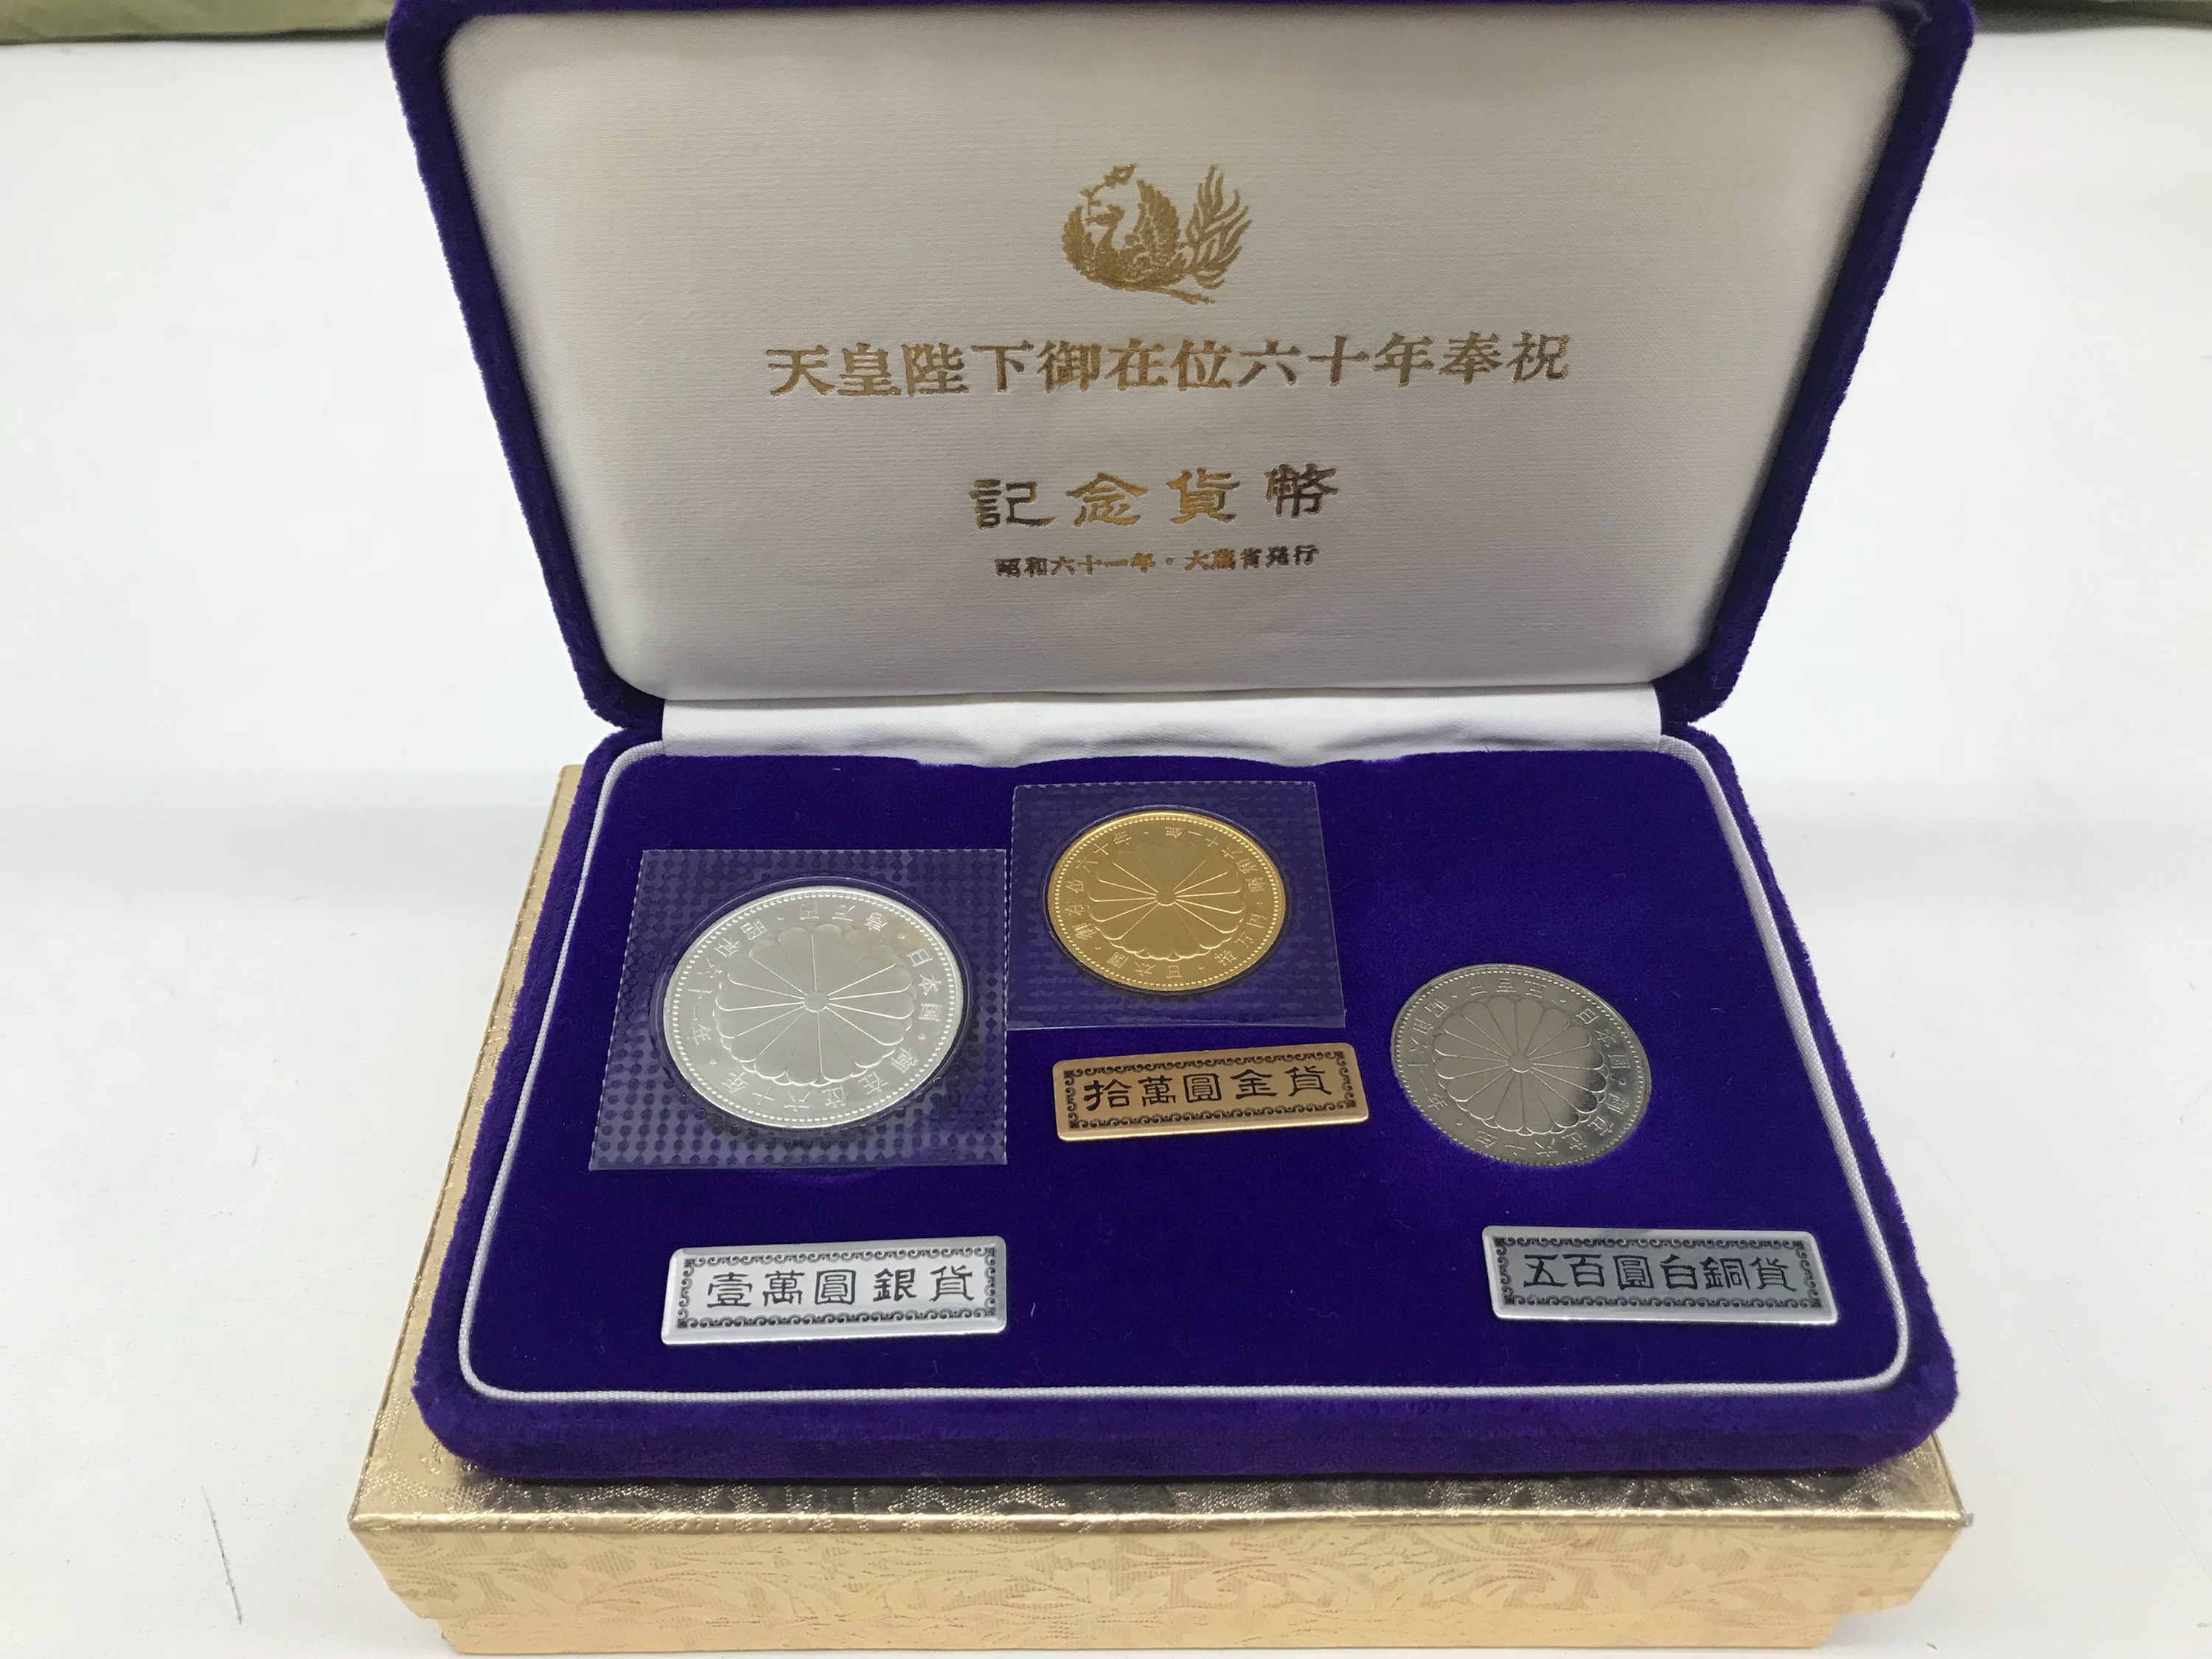 天皇陛下御在位60年記念硬貨 - 旧貨幣/金貨/銀貨/記念硬貨